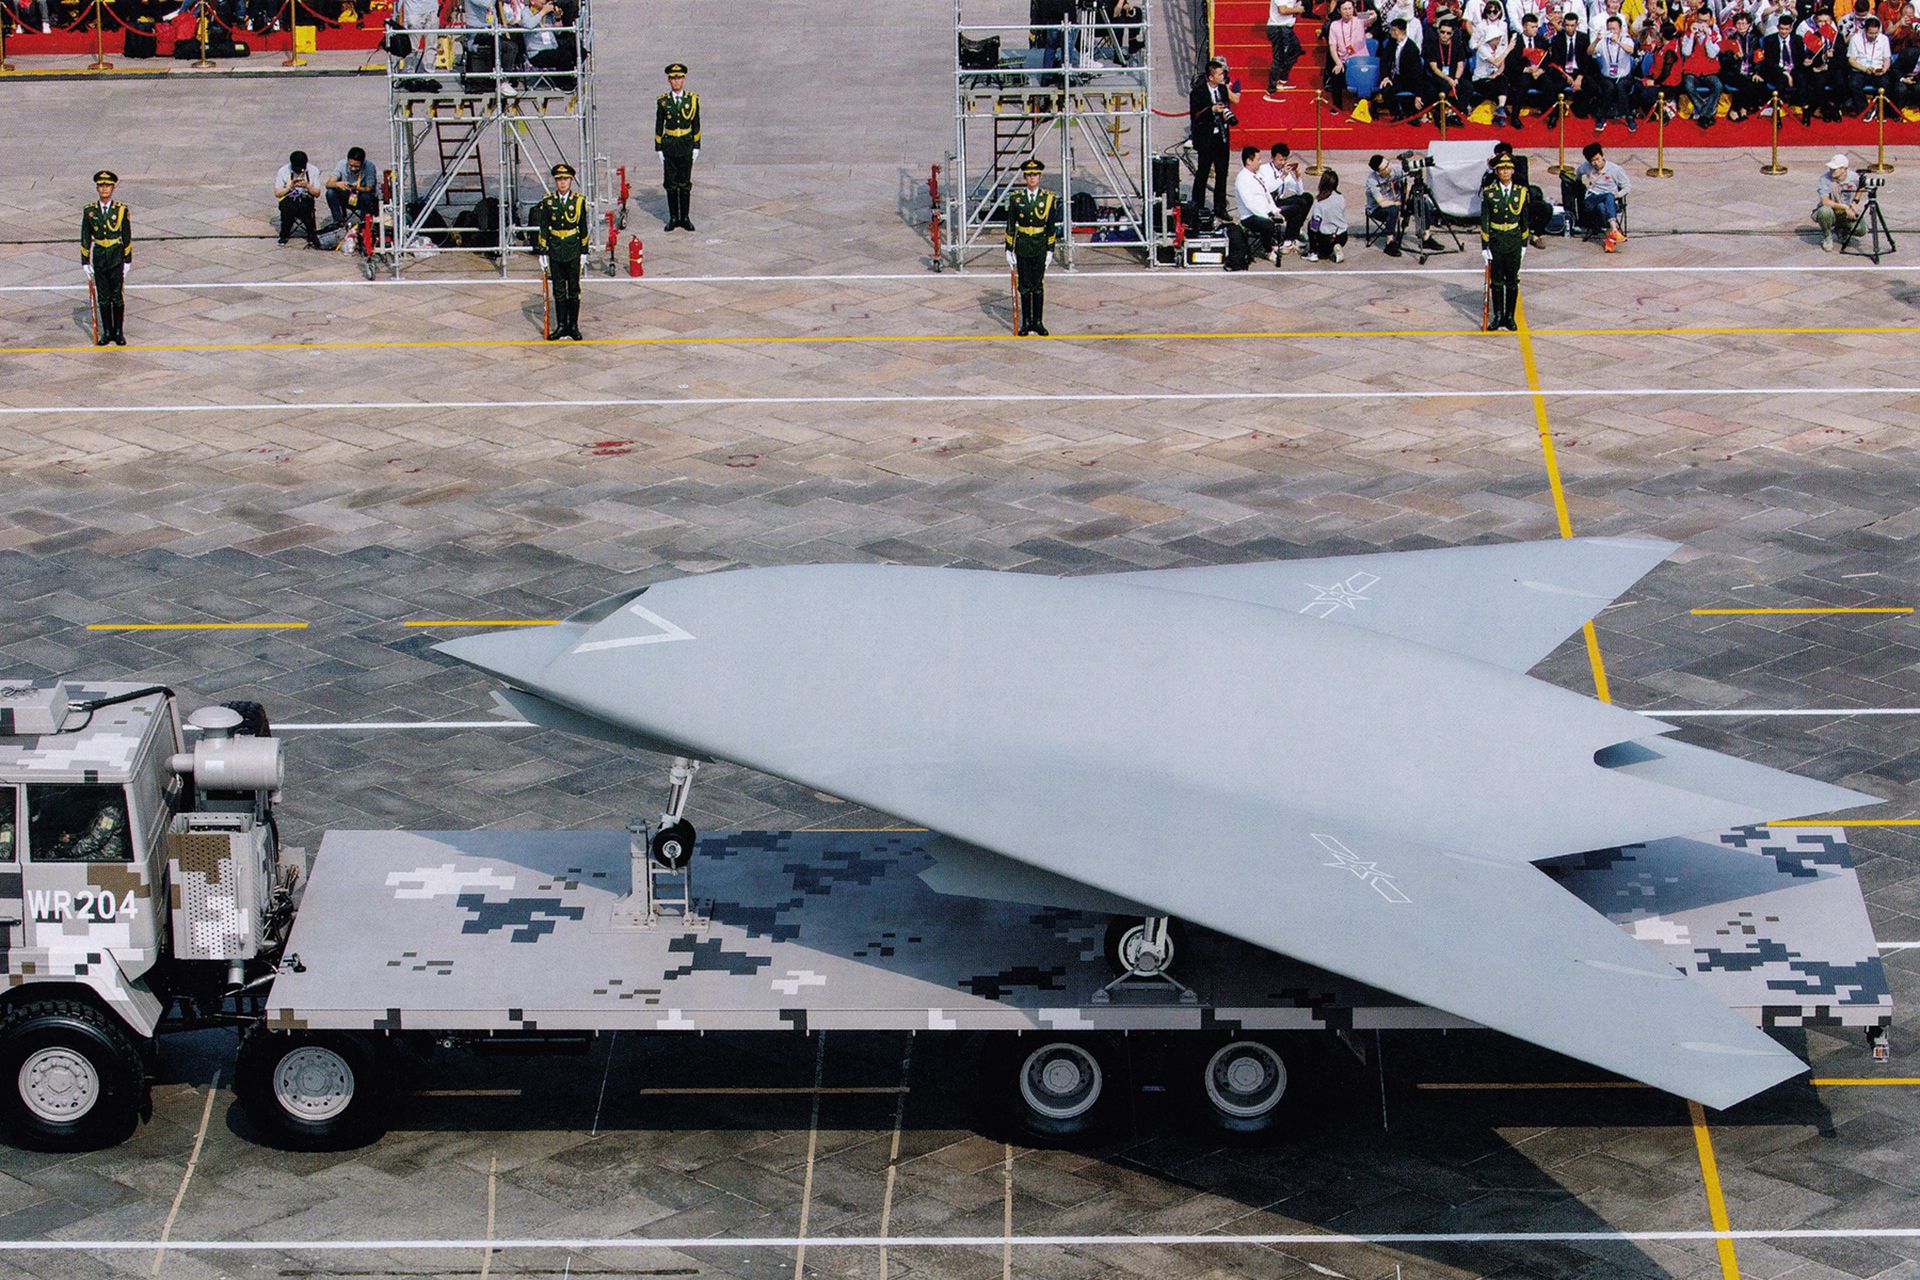 中国研制多型无人机。图为“攻击-11”无人机。中航工业内部的模型显示，“攻击-11”机腹有两个弹舱，可装载4枚小型制导炸弹和1枚大型制导炸弹。（鼎盛军事）